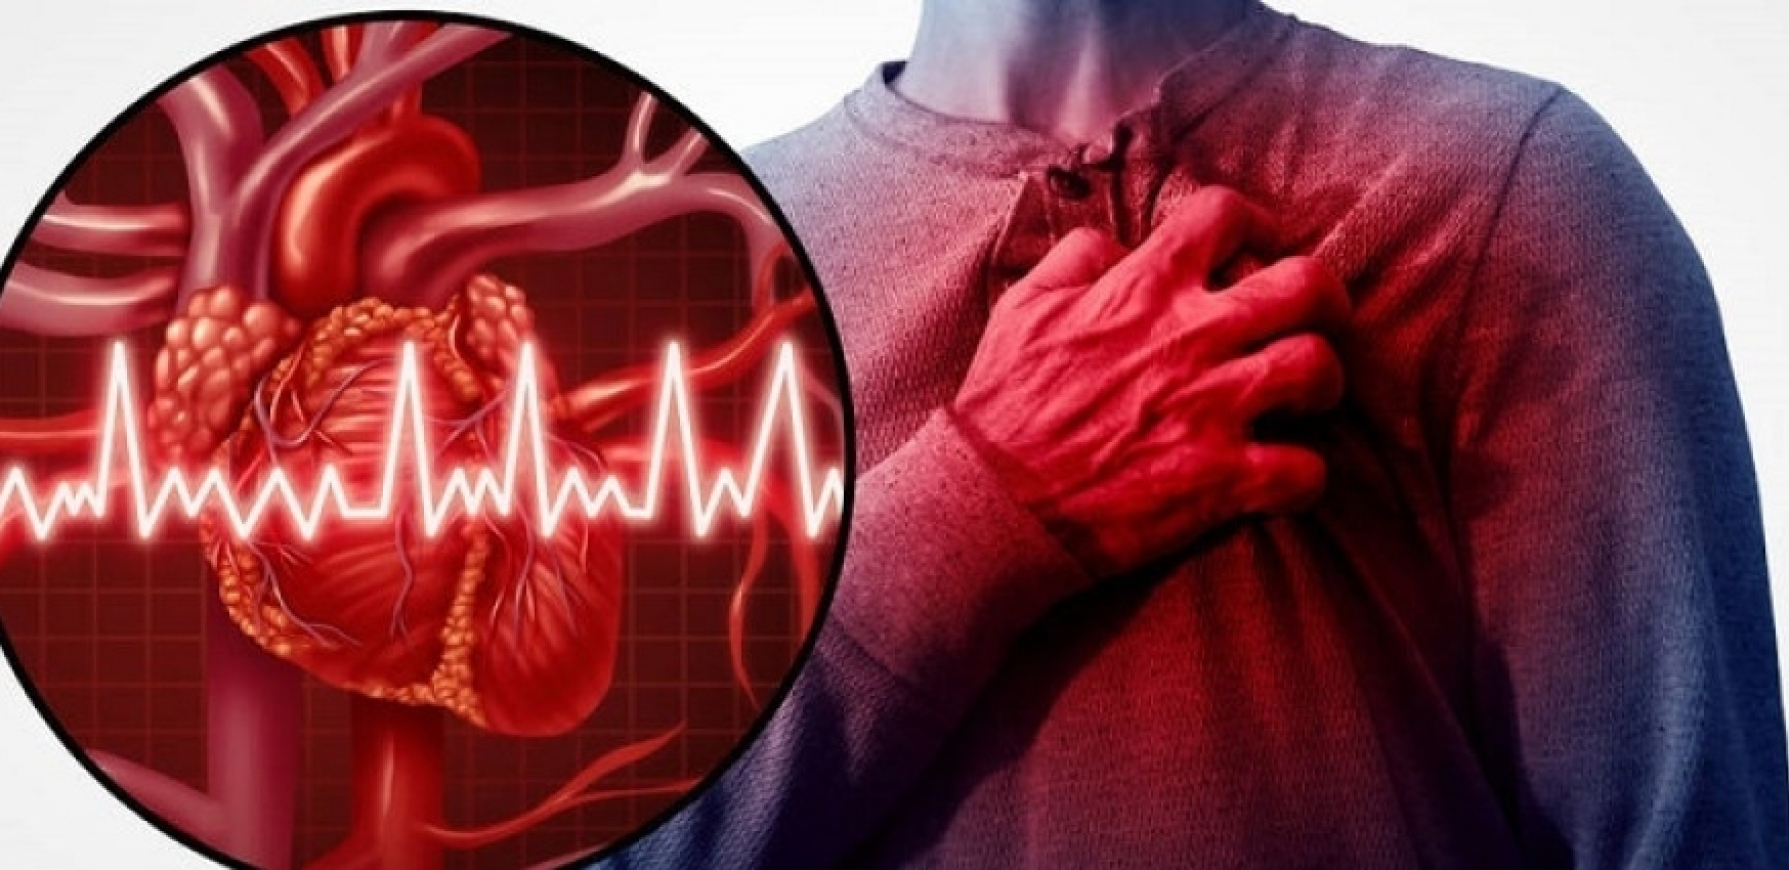 Čuveni hirurg otkrio istinu o srčanim bolestima: Hrana koja je "prograšena" zdravom izaziva požar u arterijama